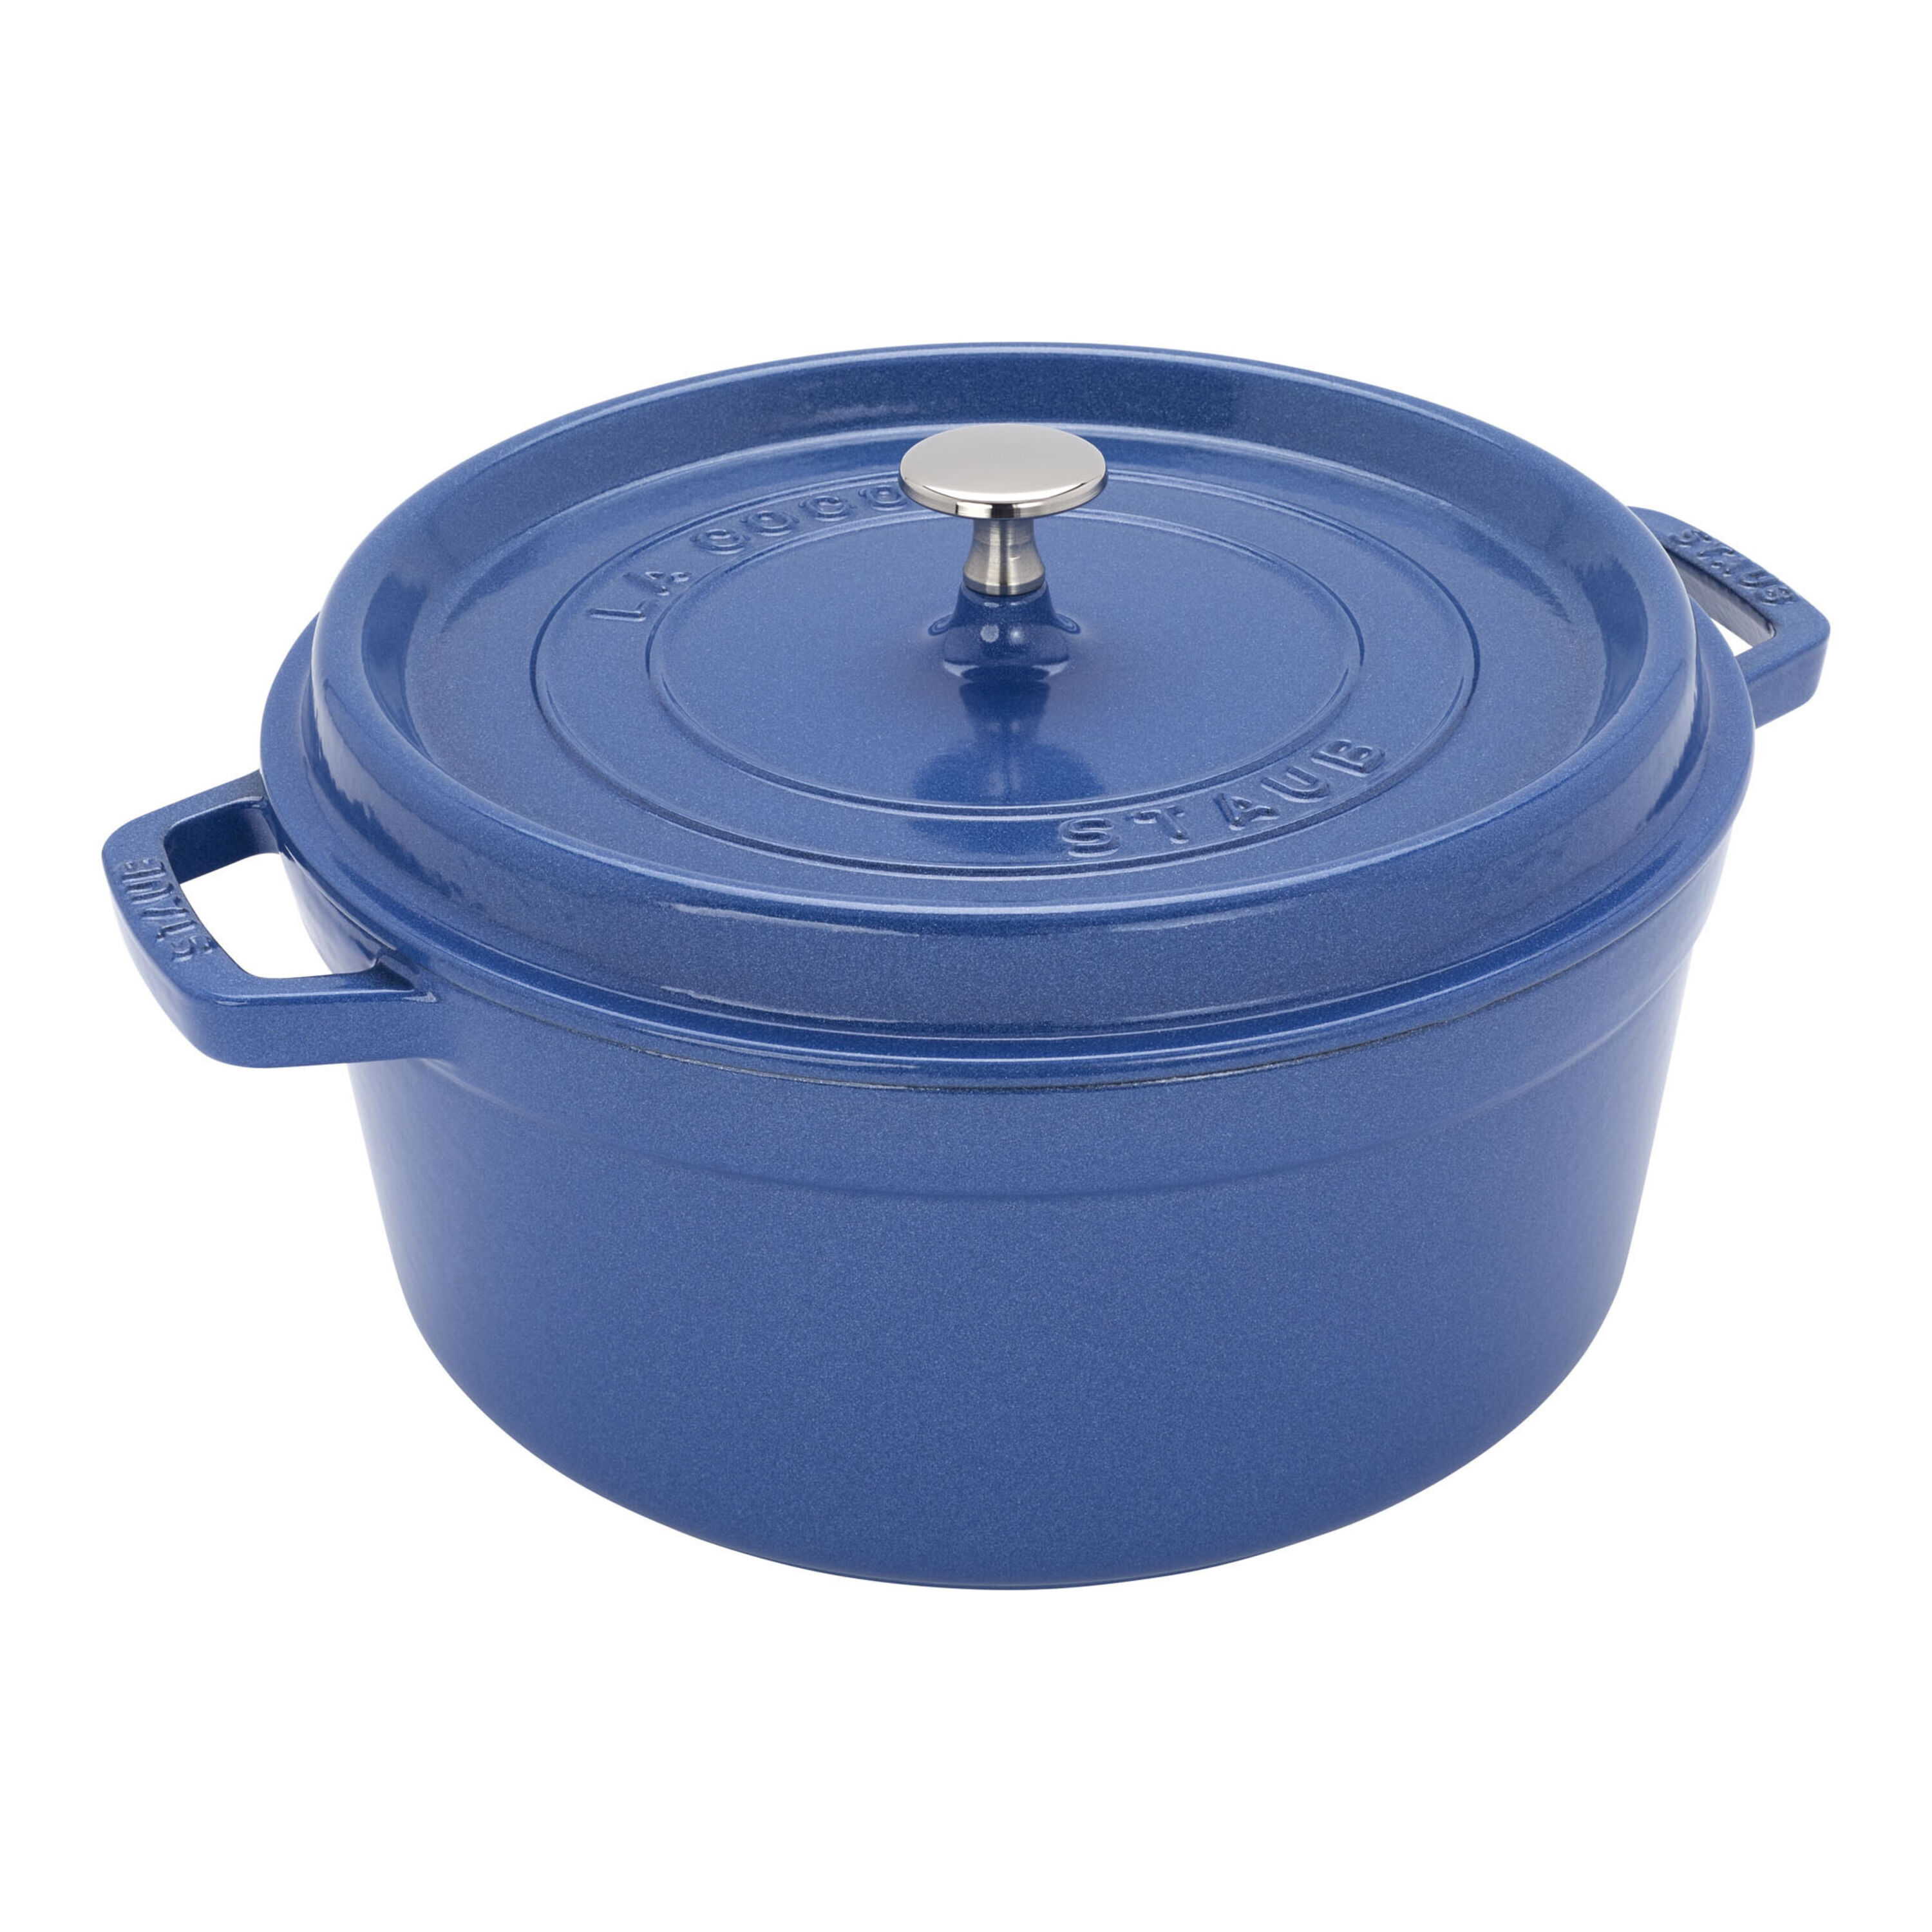 Staub casserole-cocotte 26 cm, 5,2 l blue  Advantageously shopping at